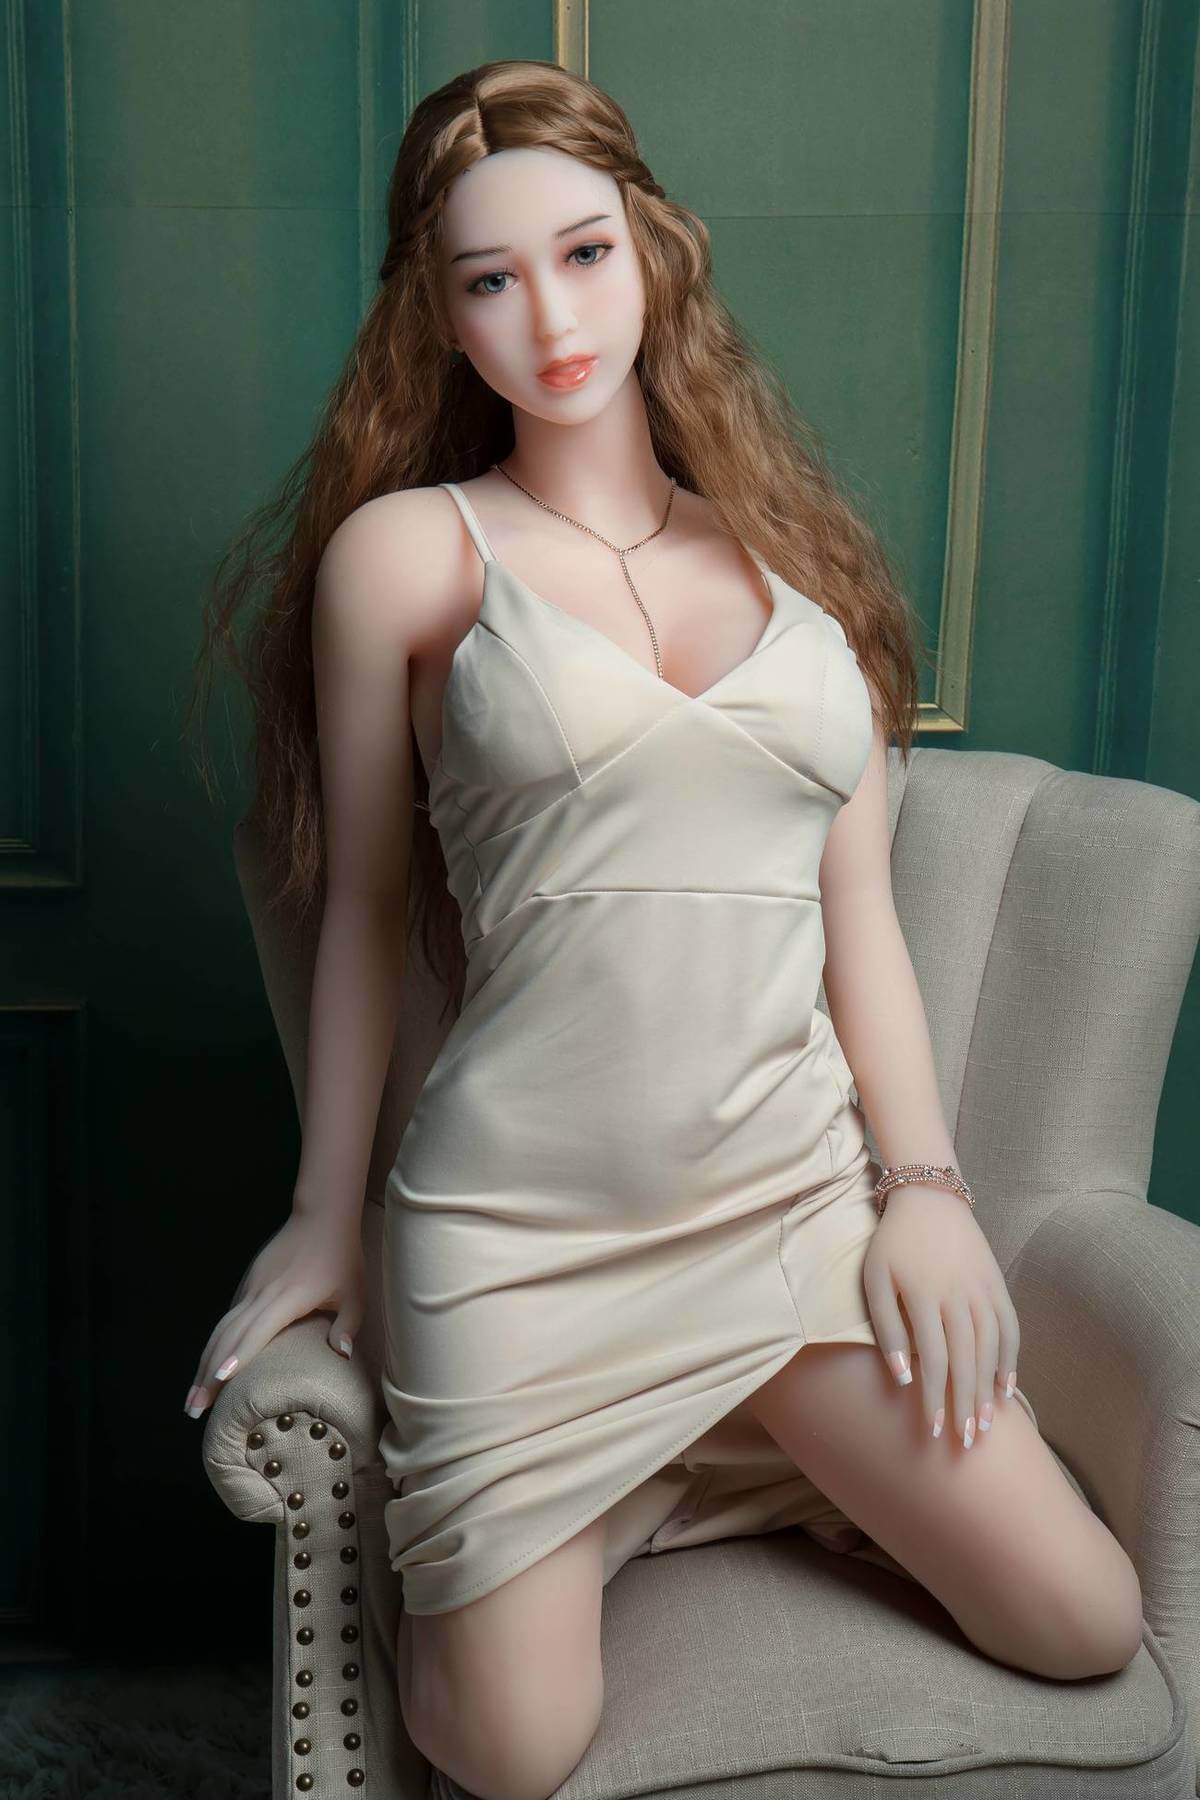 Asian Blonde Mature Sex Doll - Juliet